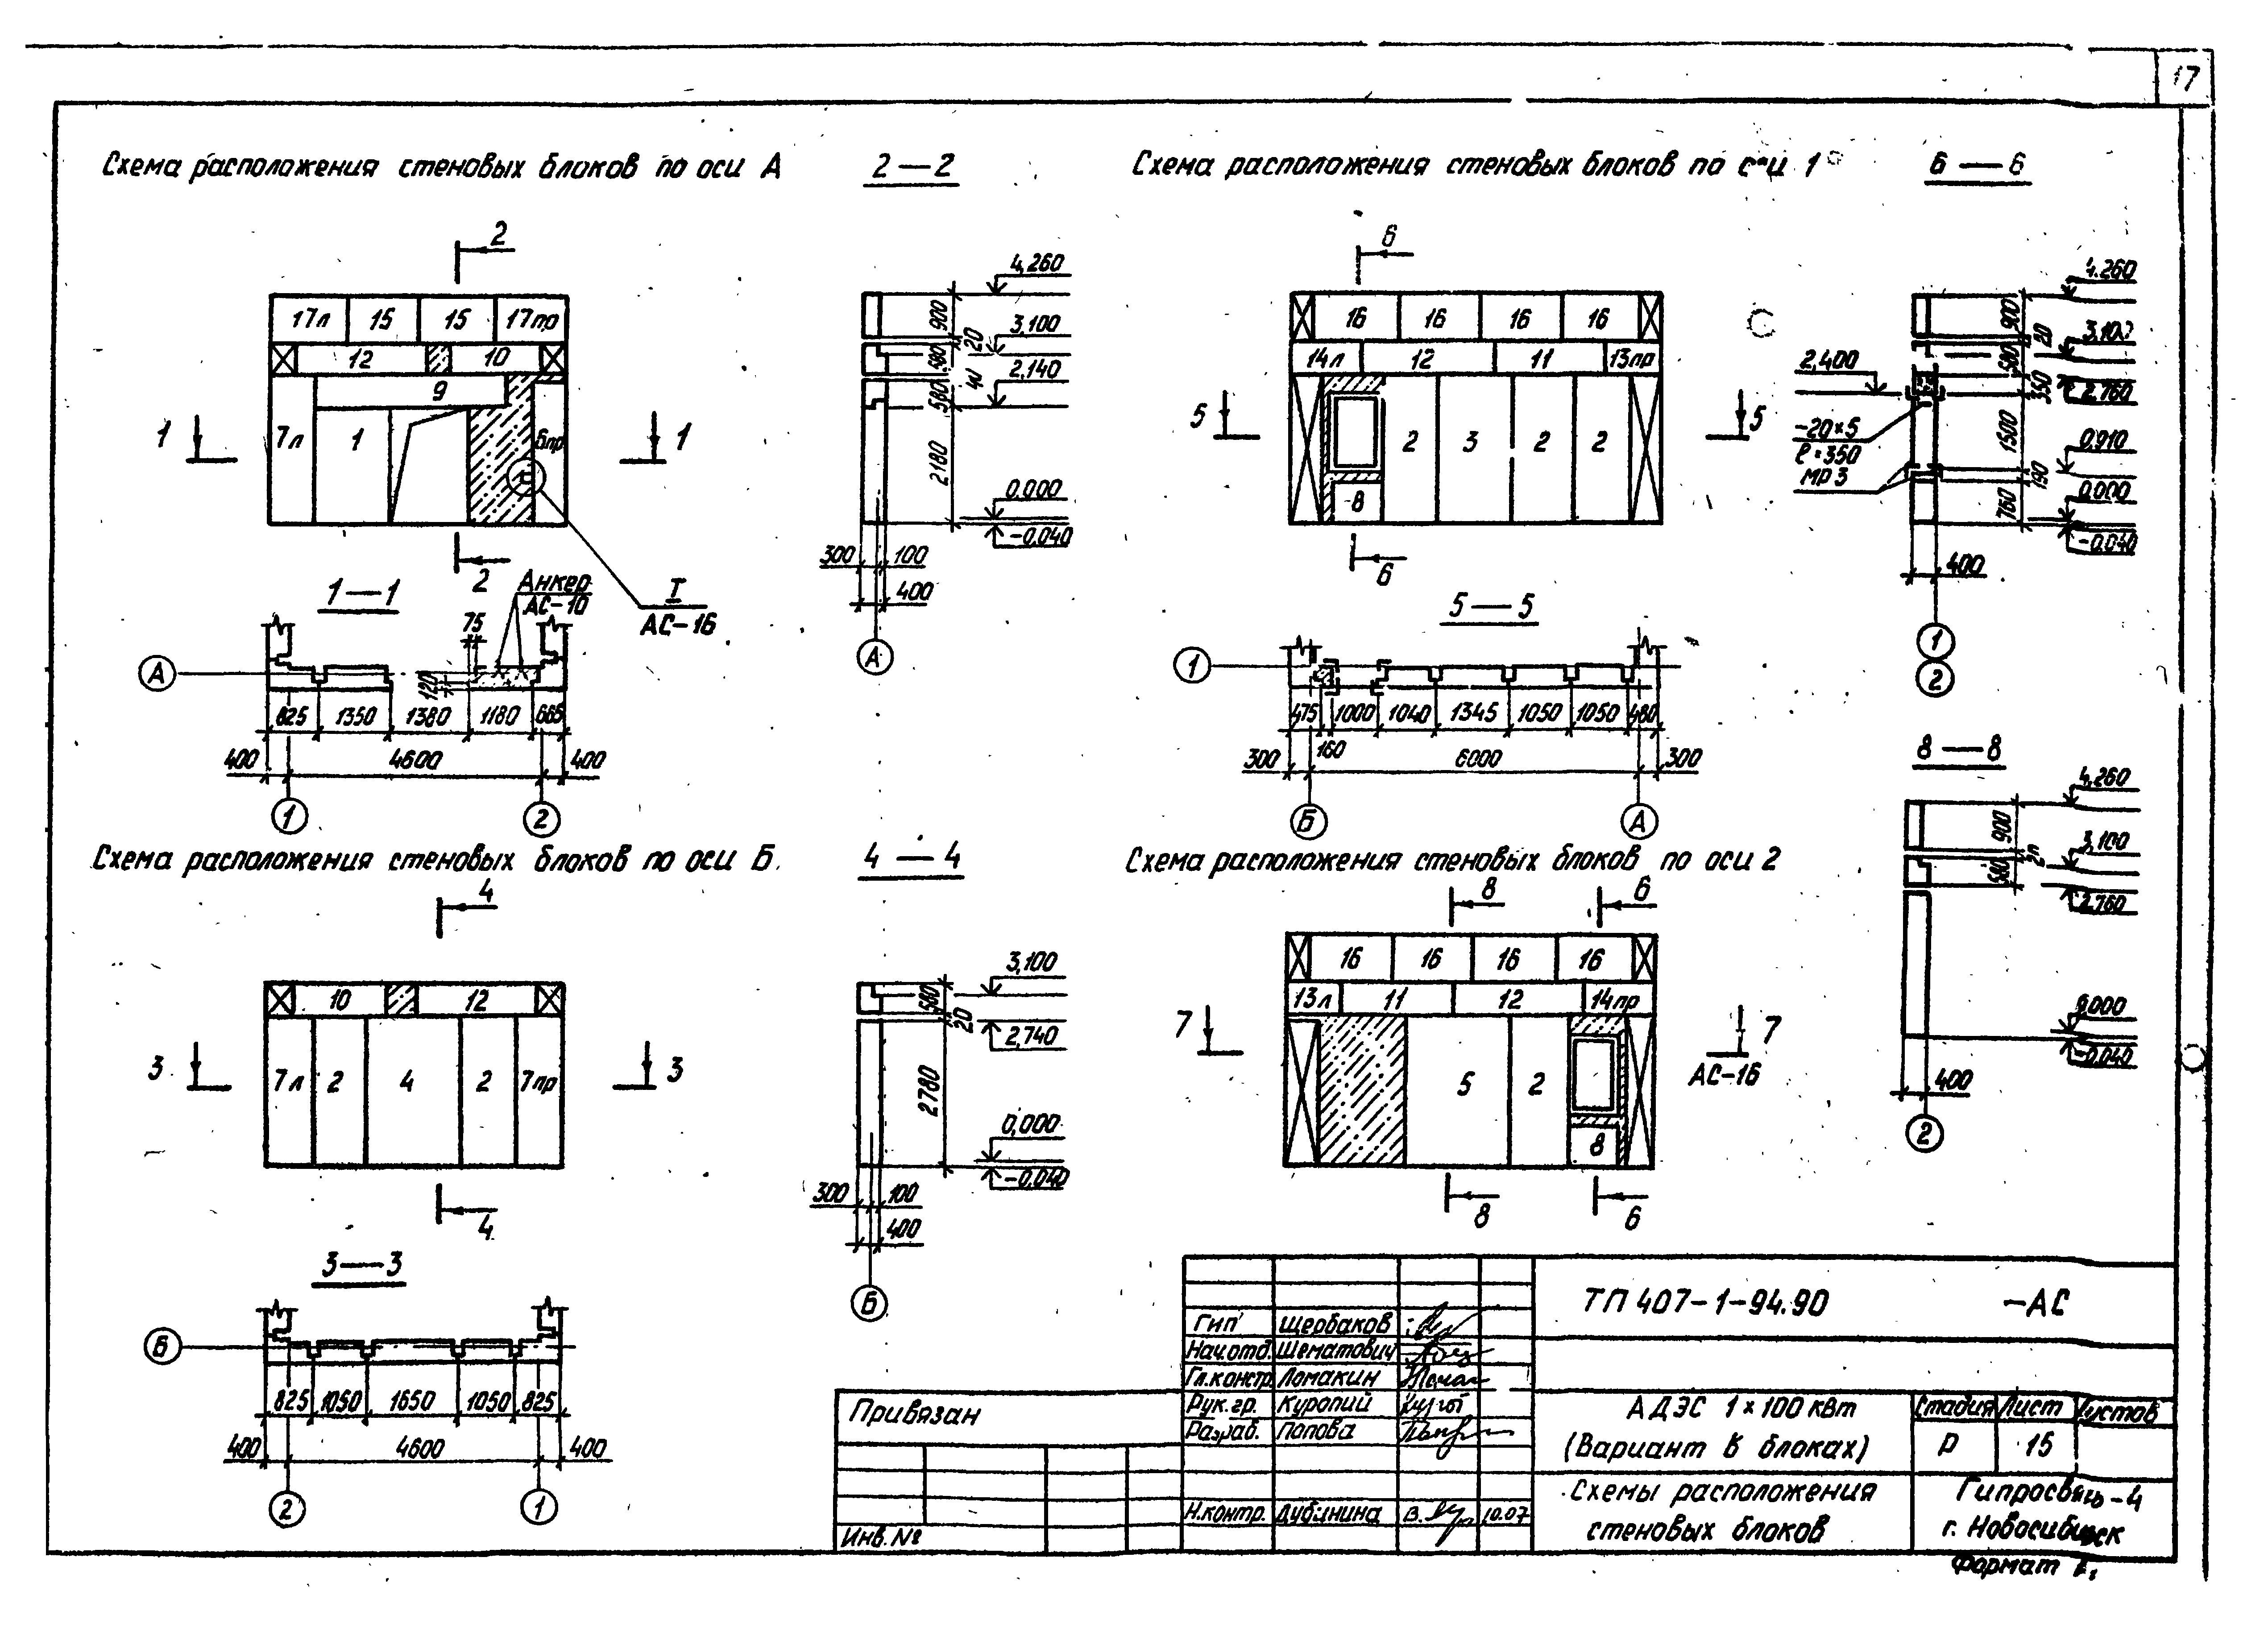 Типовой проект 407-1-94.90